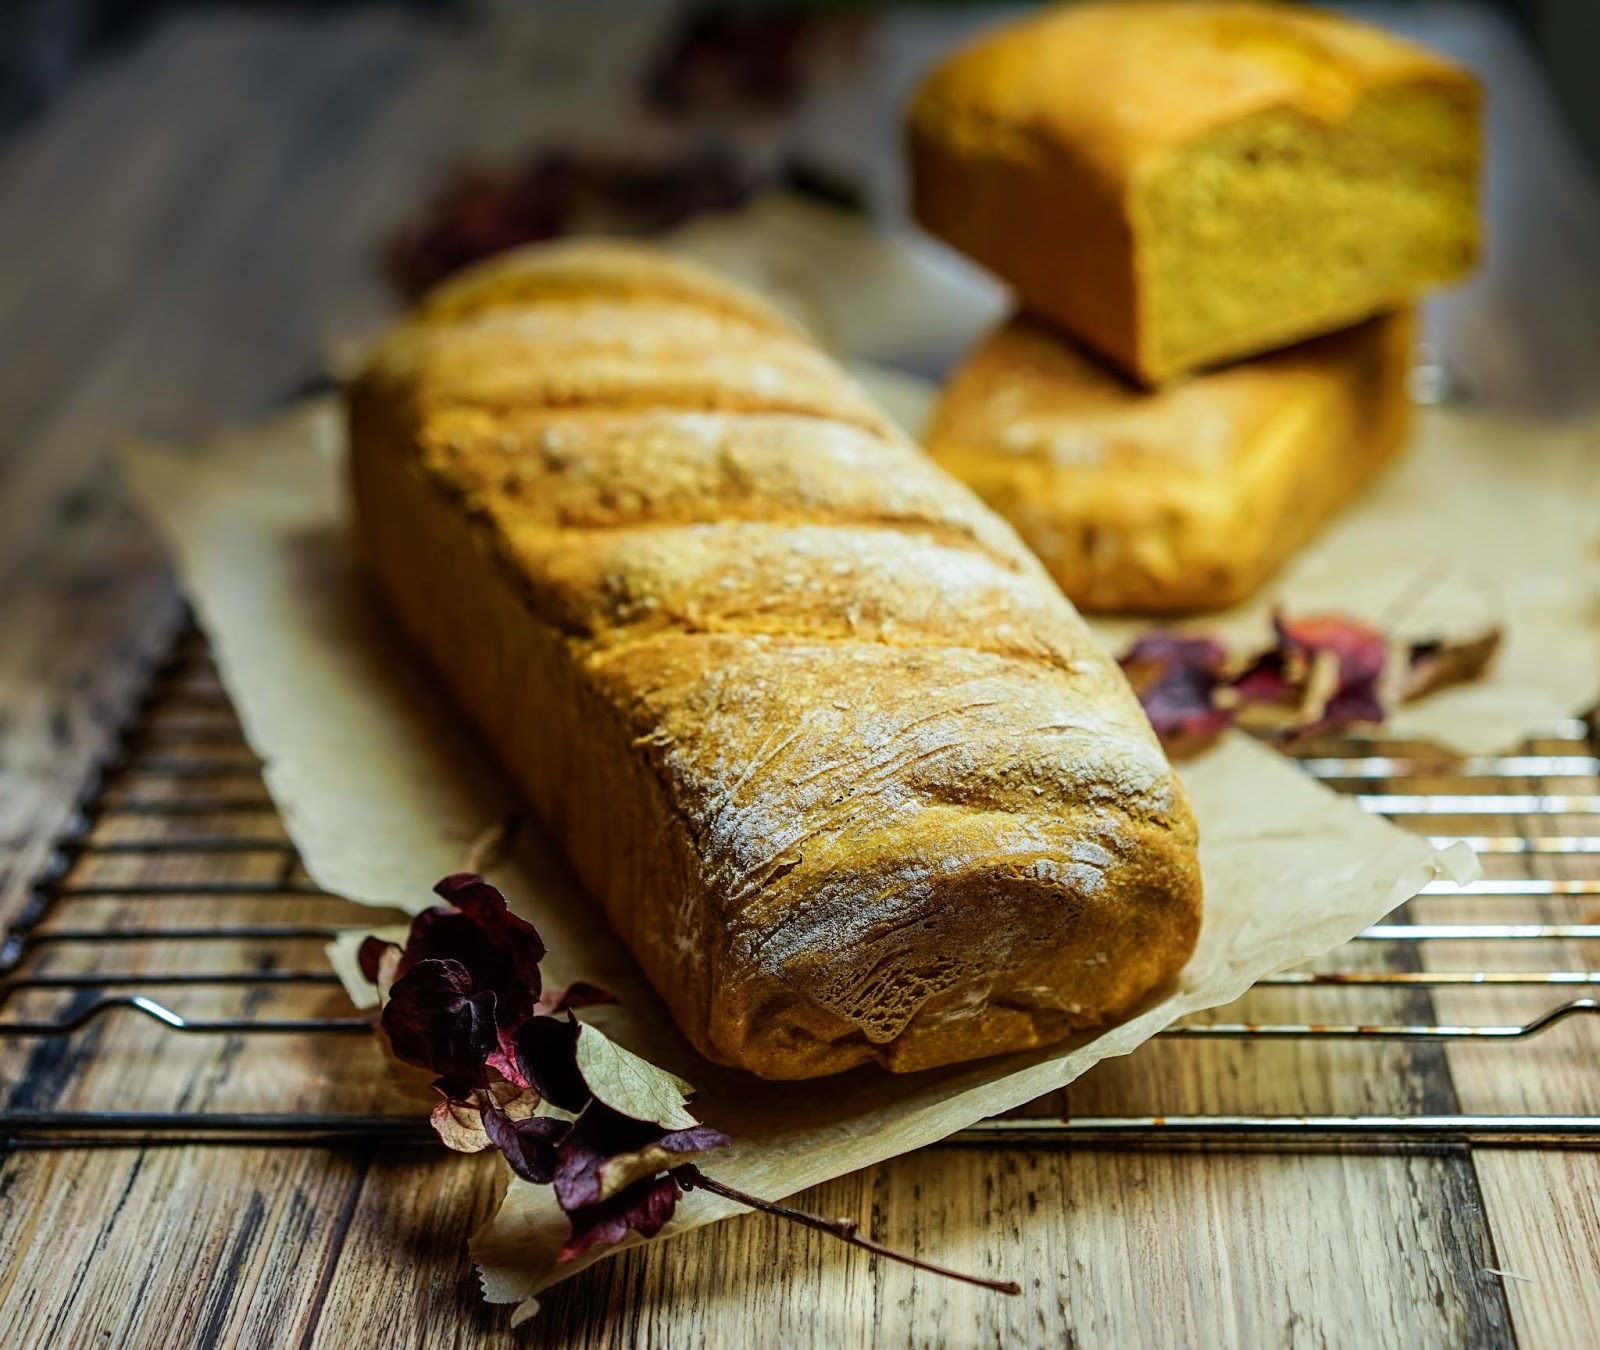 stuttgartcooking: Kürbis-Brot mit Dinkelmehl gebacken